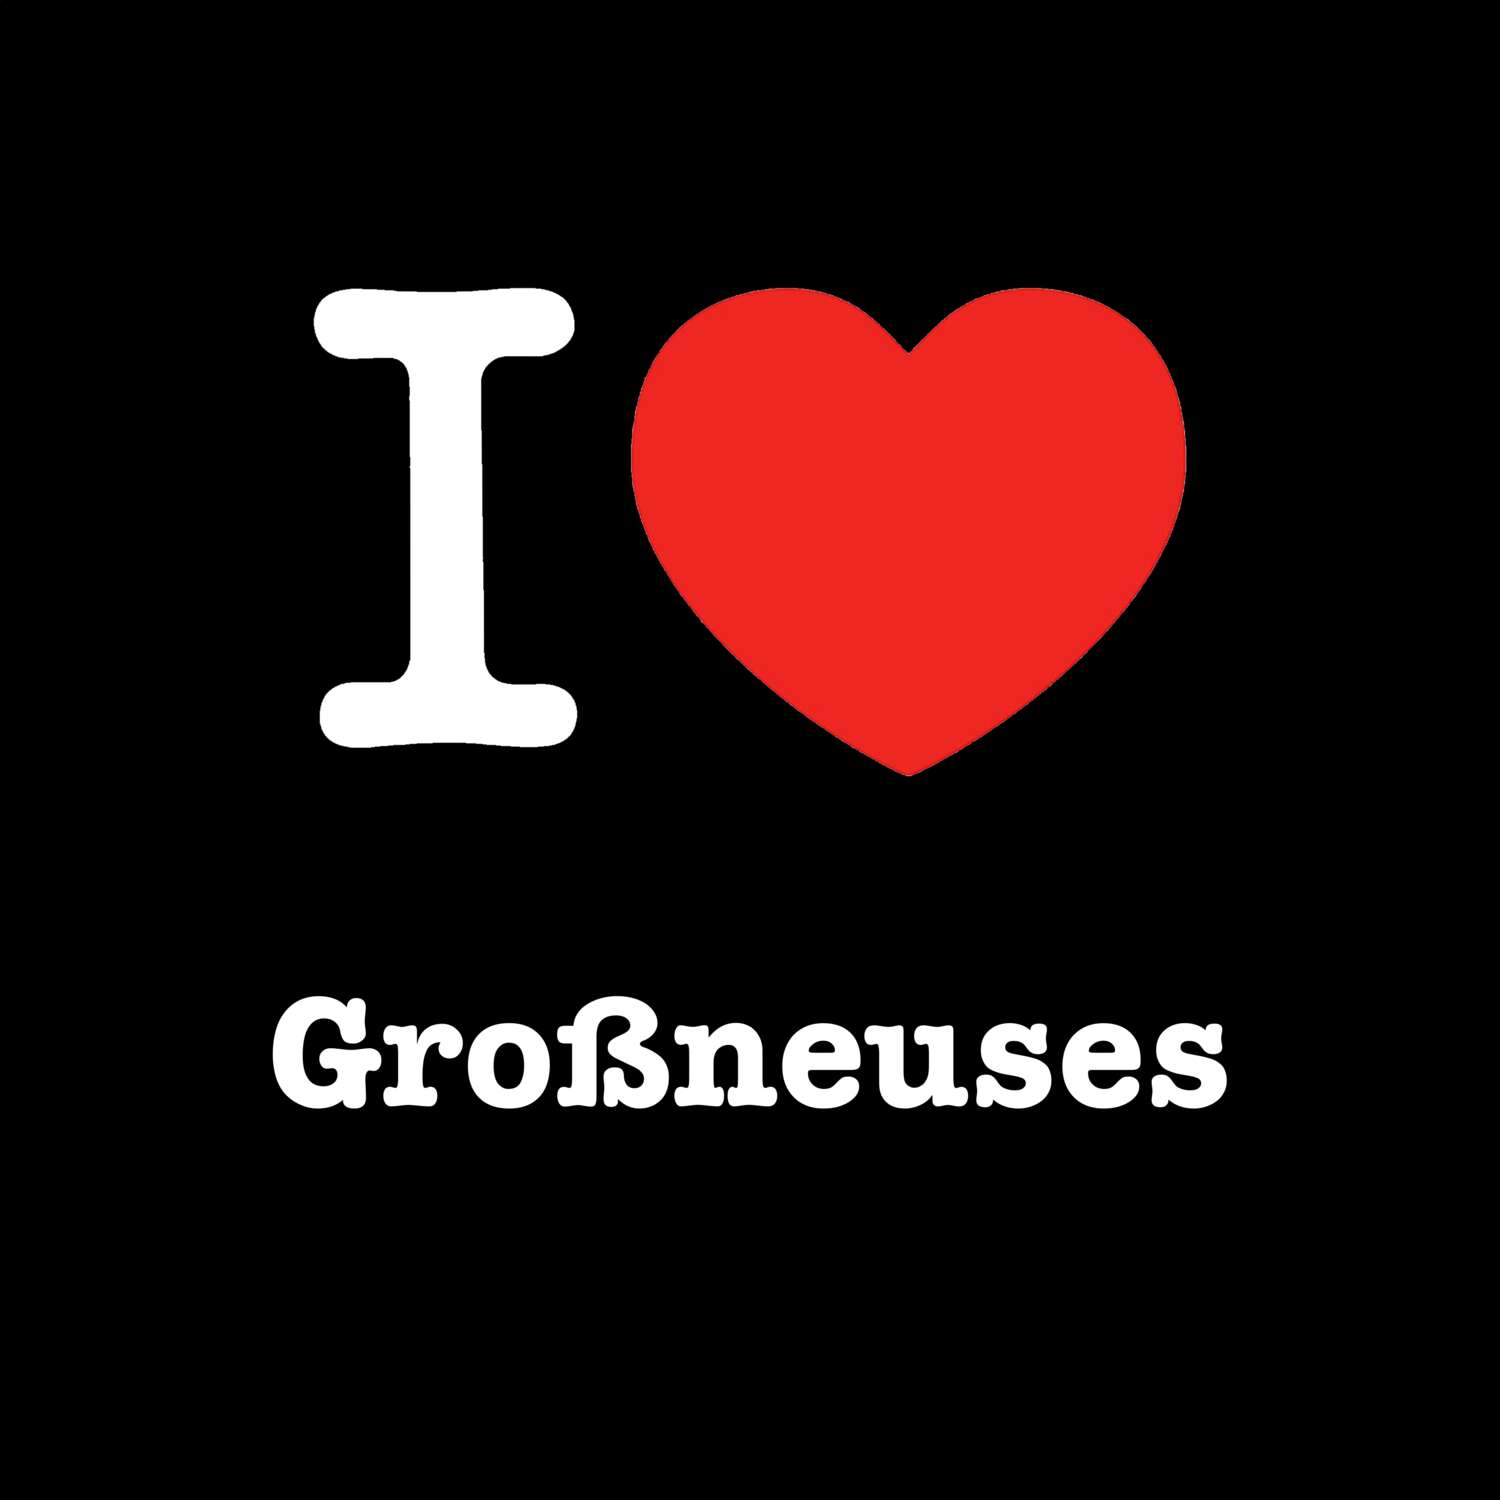 Großneuses T-Shirt »I love«